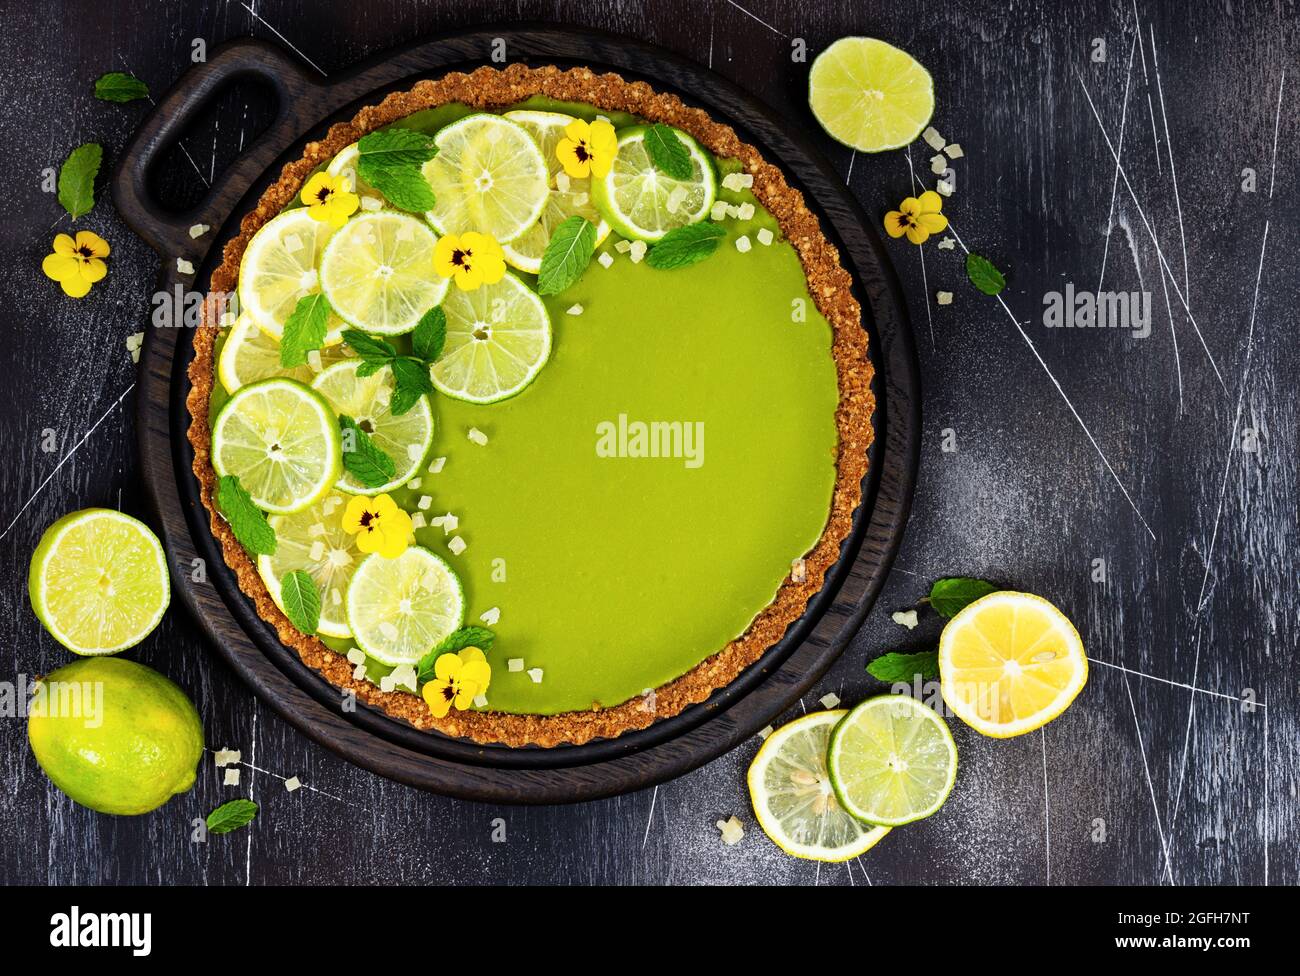 Cheesecake avec des tranches de citron vert, menthe fraîche, fruits confits et fleurs de pansy sur fond de pierre sombre. Vue de dessus. Banque D'Images